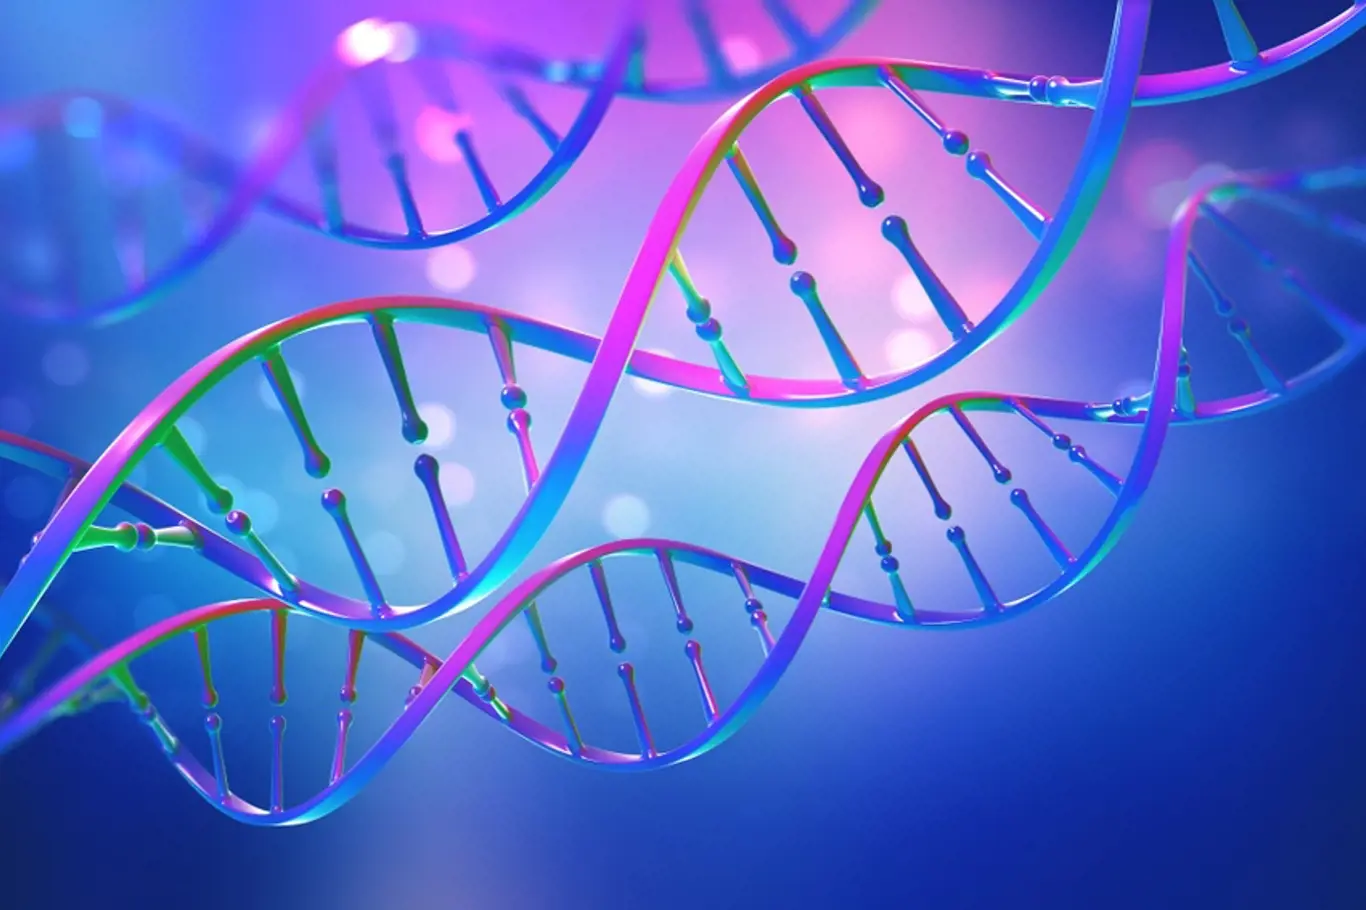 Co vědci zjistili z DNA?